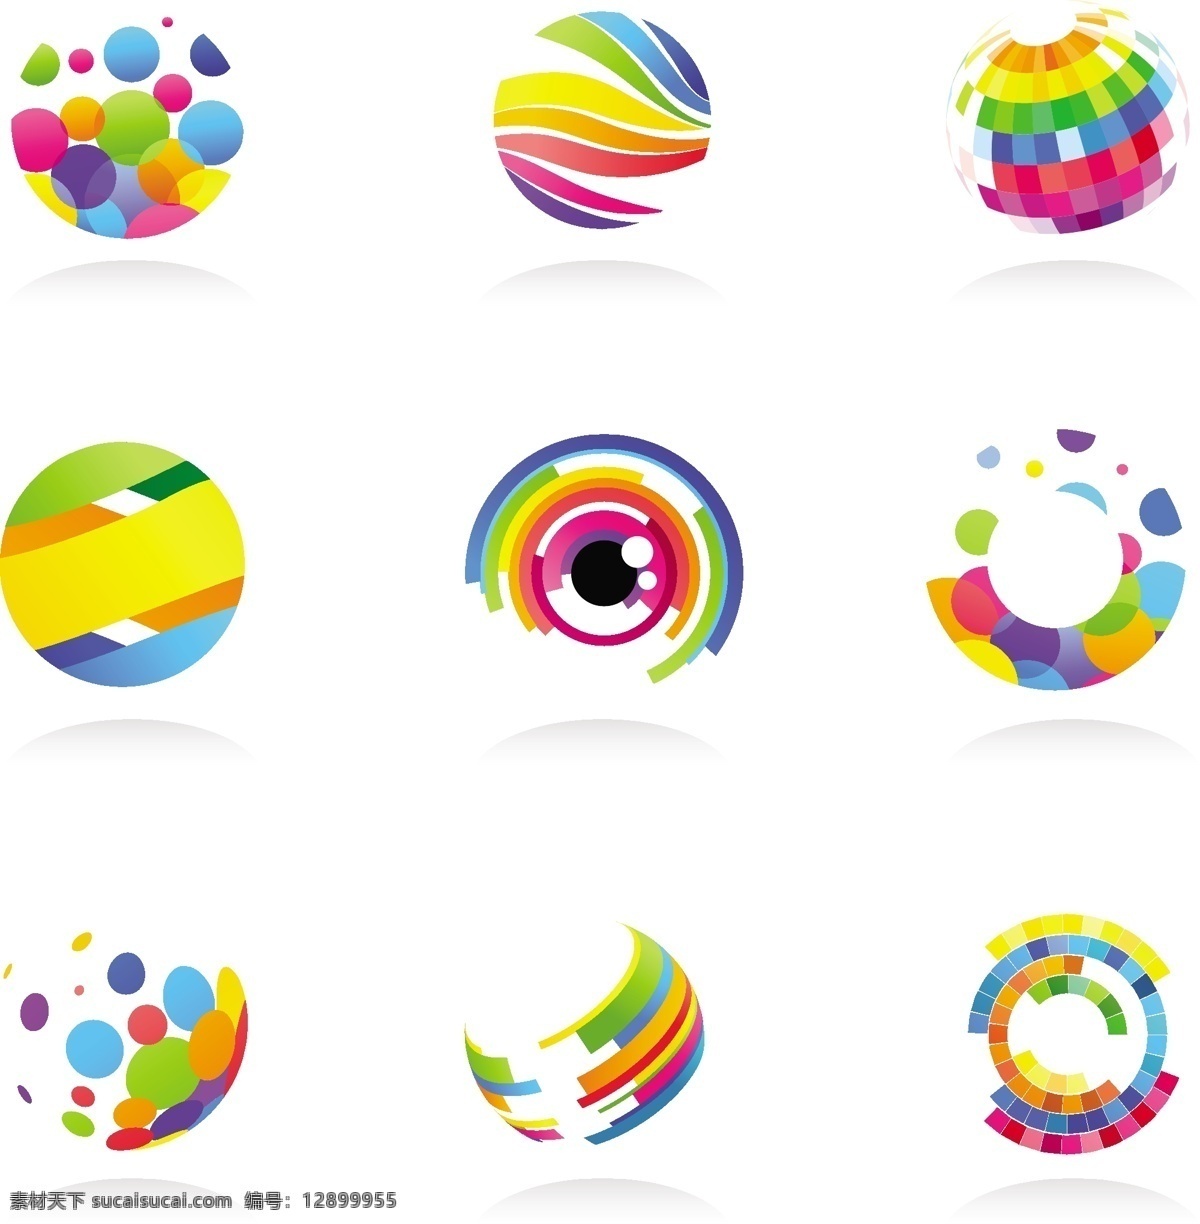 梦幻 炫彩 logo 彩色 创意 logo图形 标志设计 商标设计 企业logo 公司logo 标志图标 矢量素材 白色